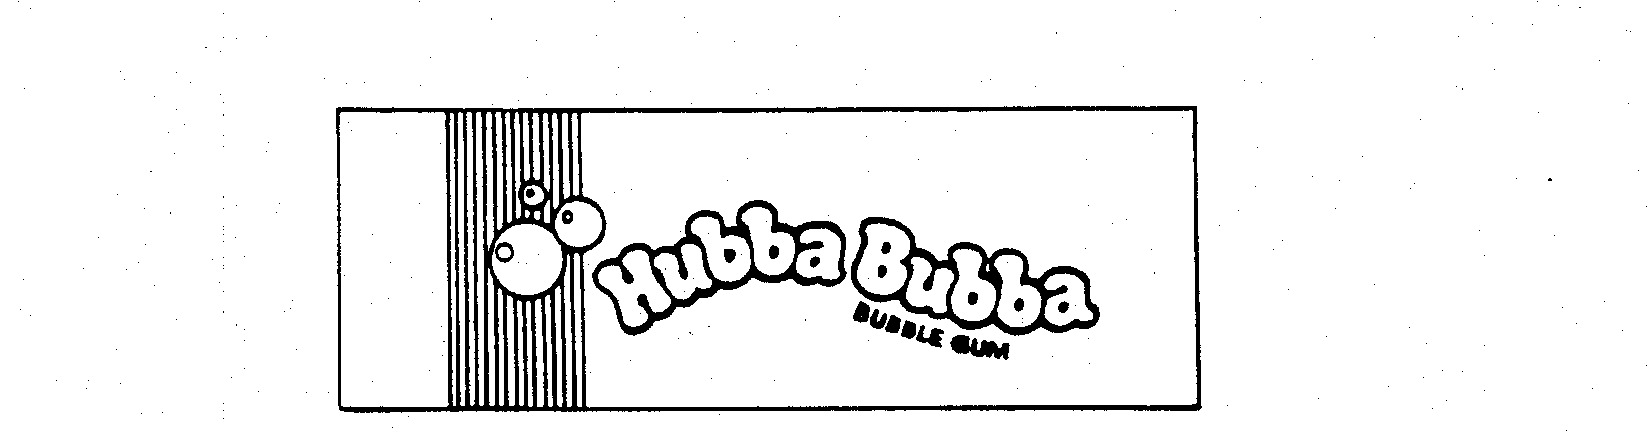  HUBBA BUBBA BUBBLE GUM